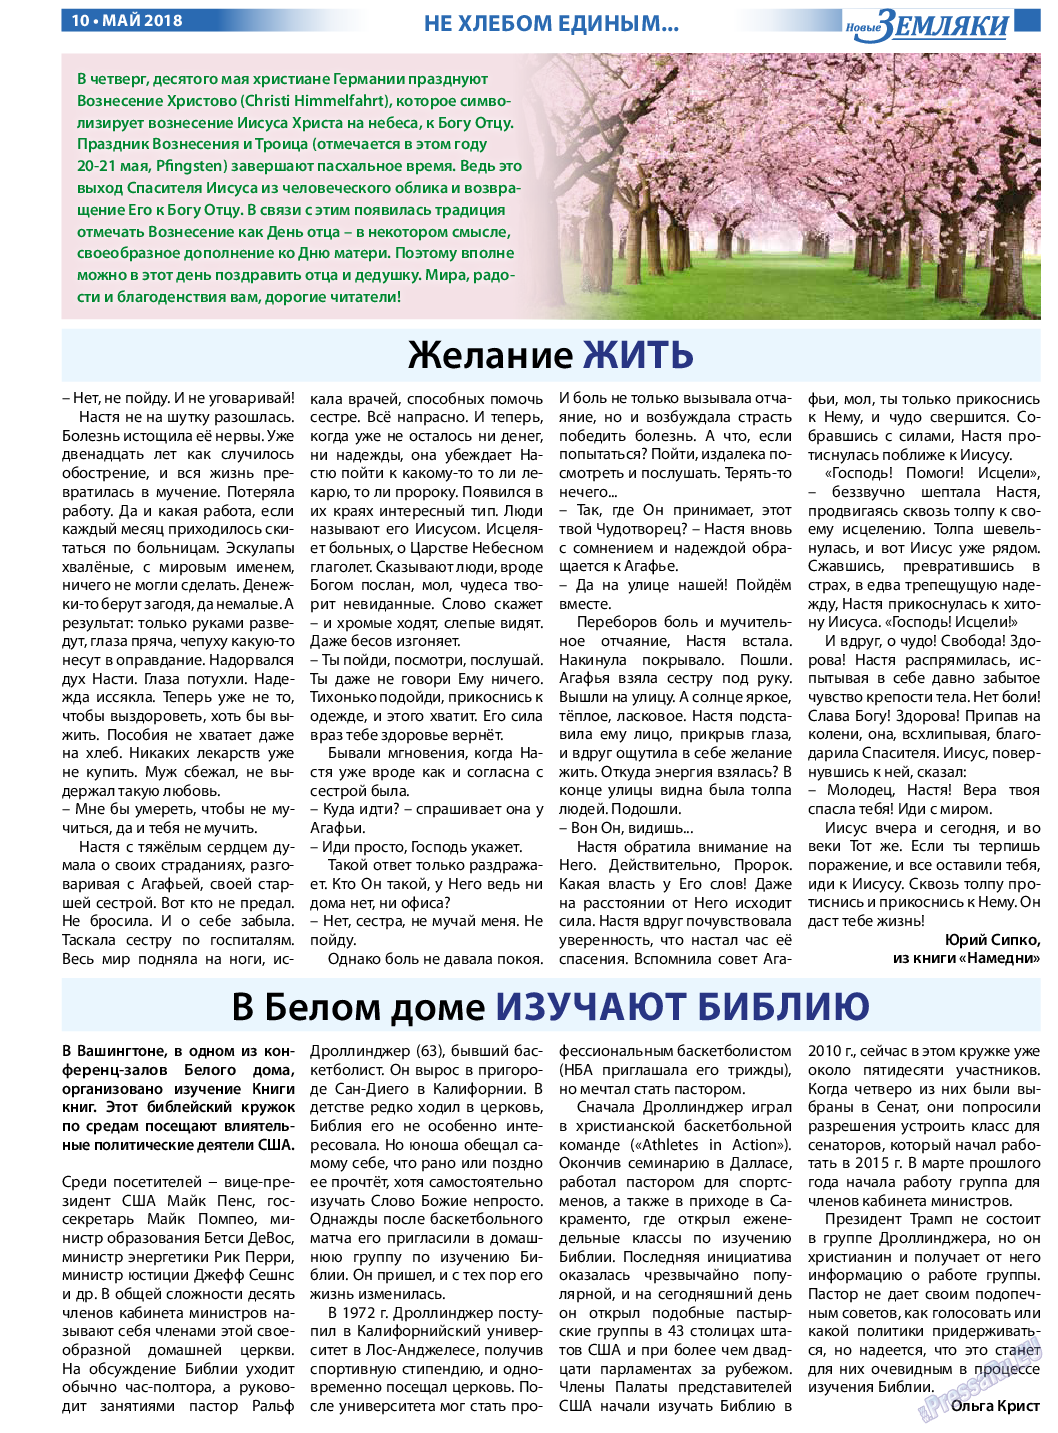 Новые Земляки, газета. 2018 №5 стр.10